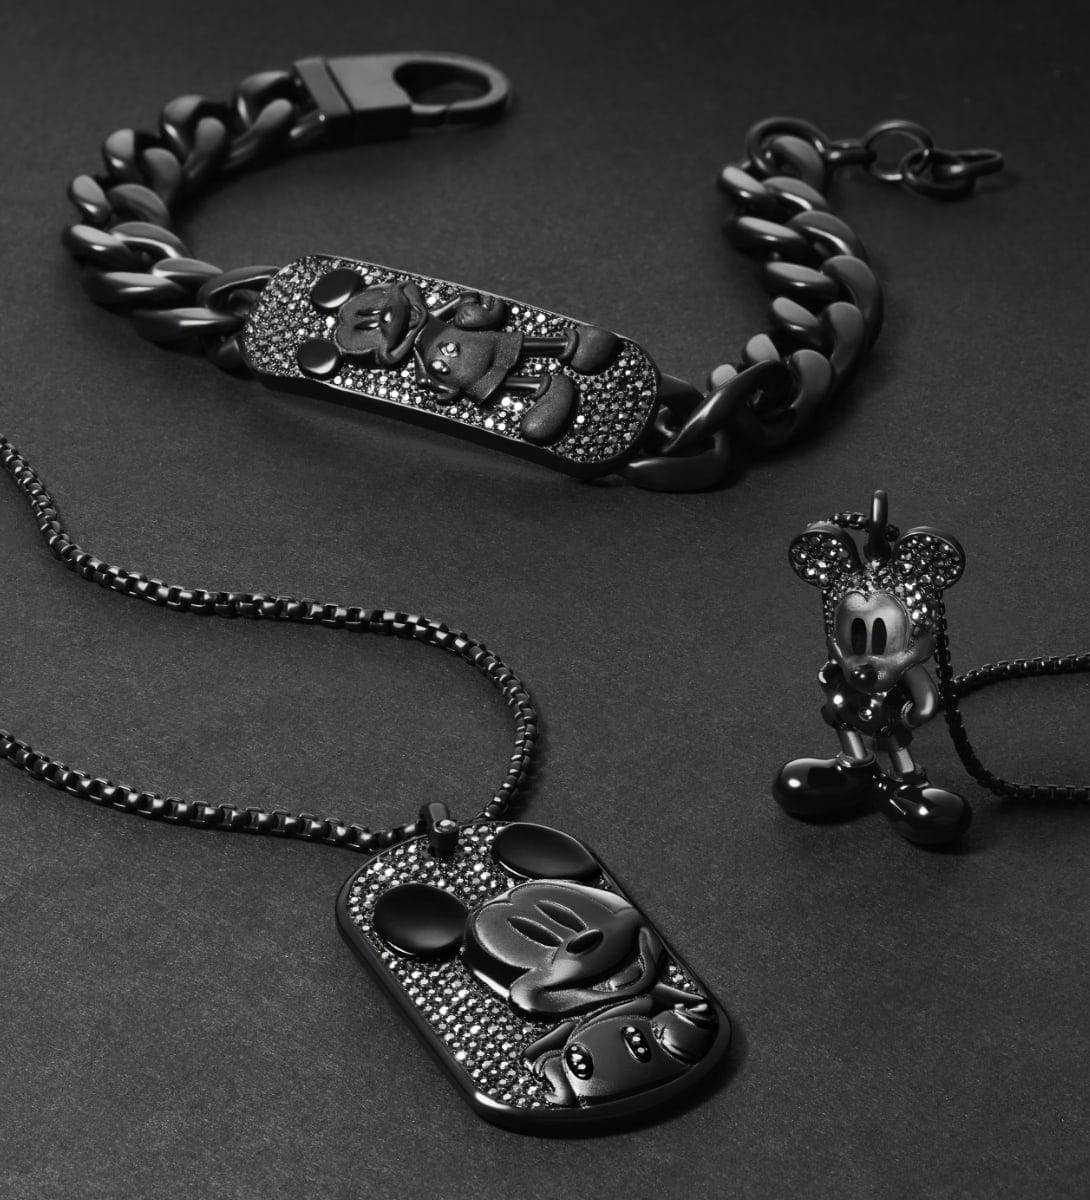 Trois bijoux Mickey Mouse noirs, cloutés de cristaux d’hématite. Une gourmette, un collier style plaque et un collier pendentif sont soigneusement présentés sur un fond noir.